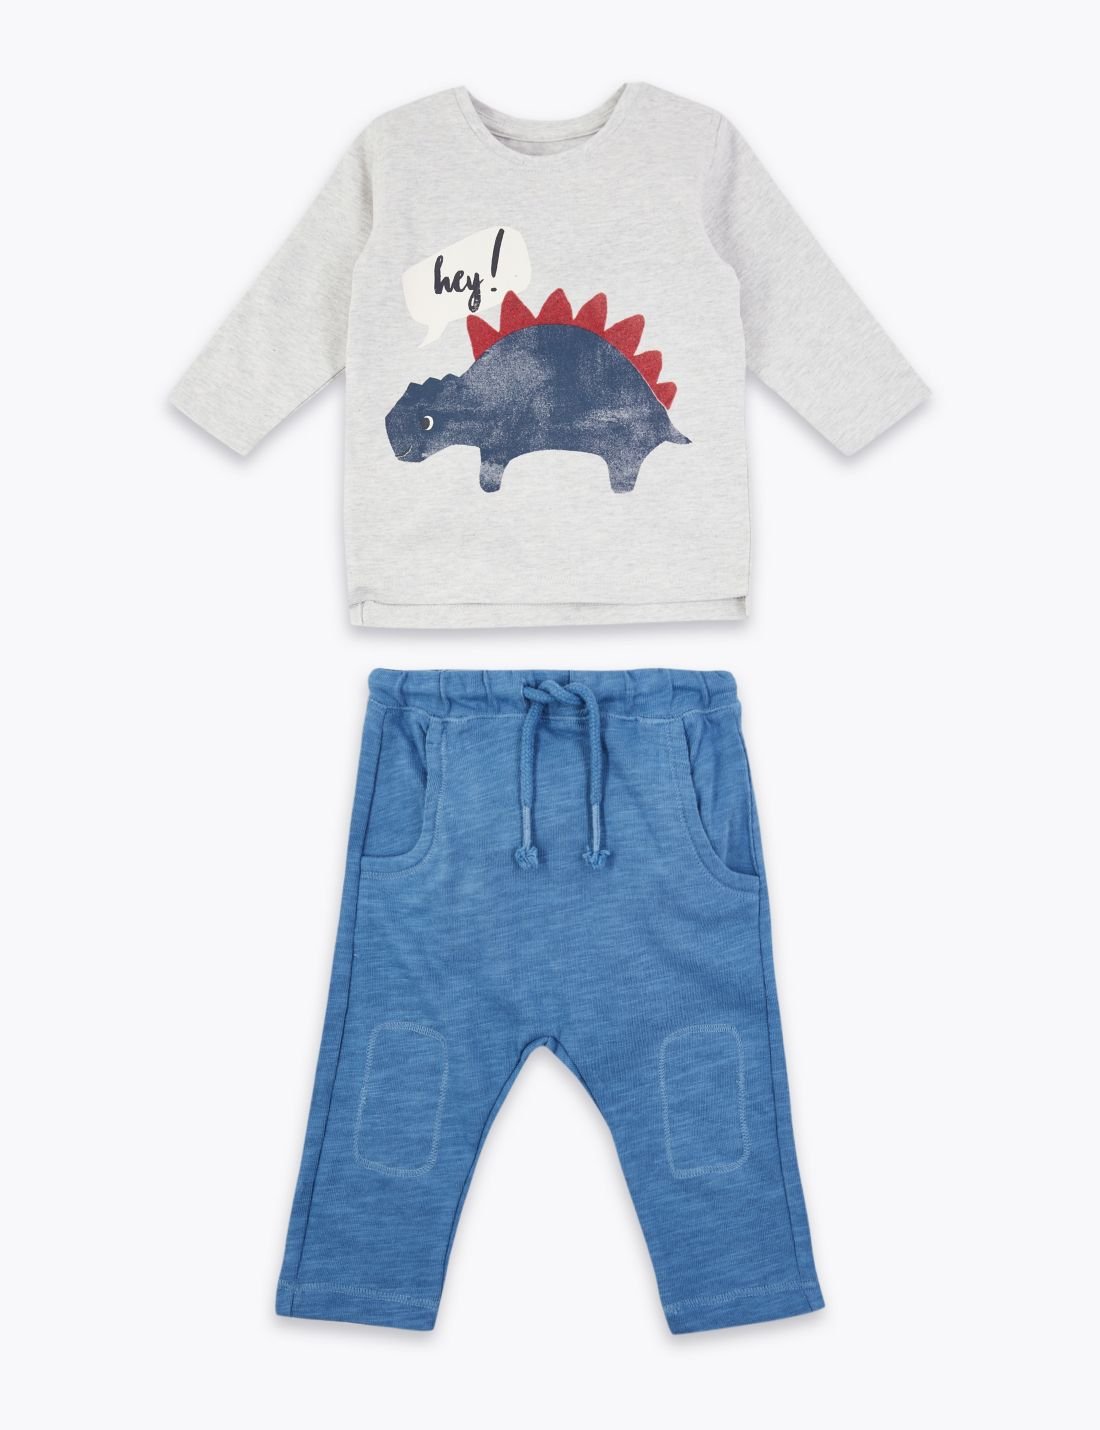 Dinozor Baskılı Sweatshirt ve Pantolon Takımı